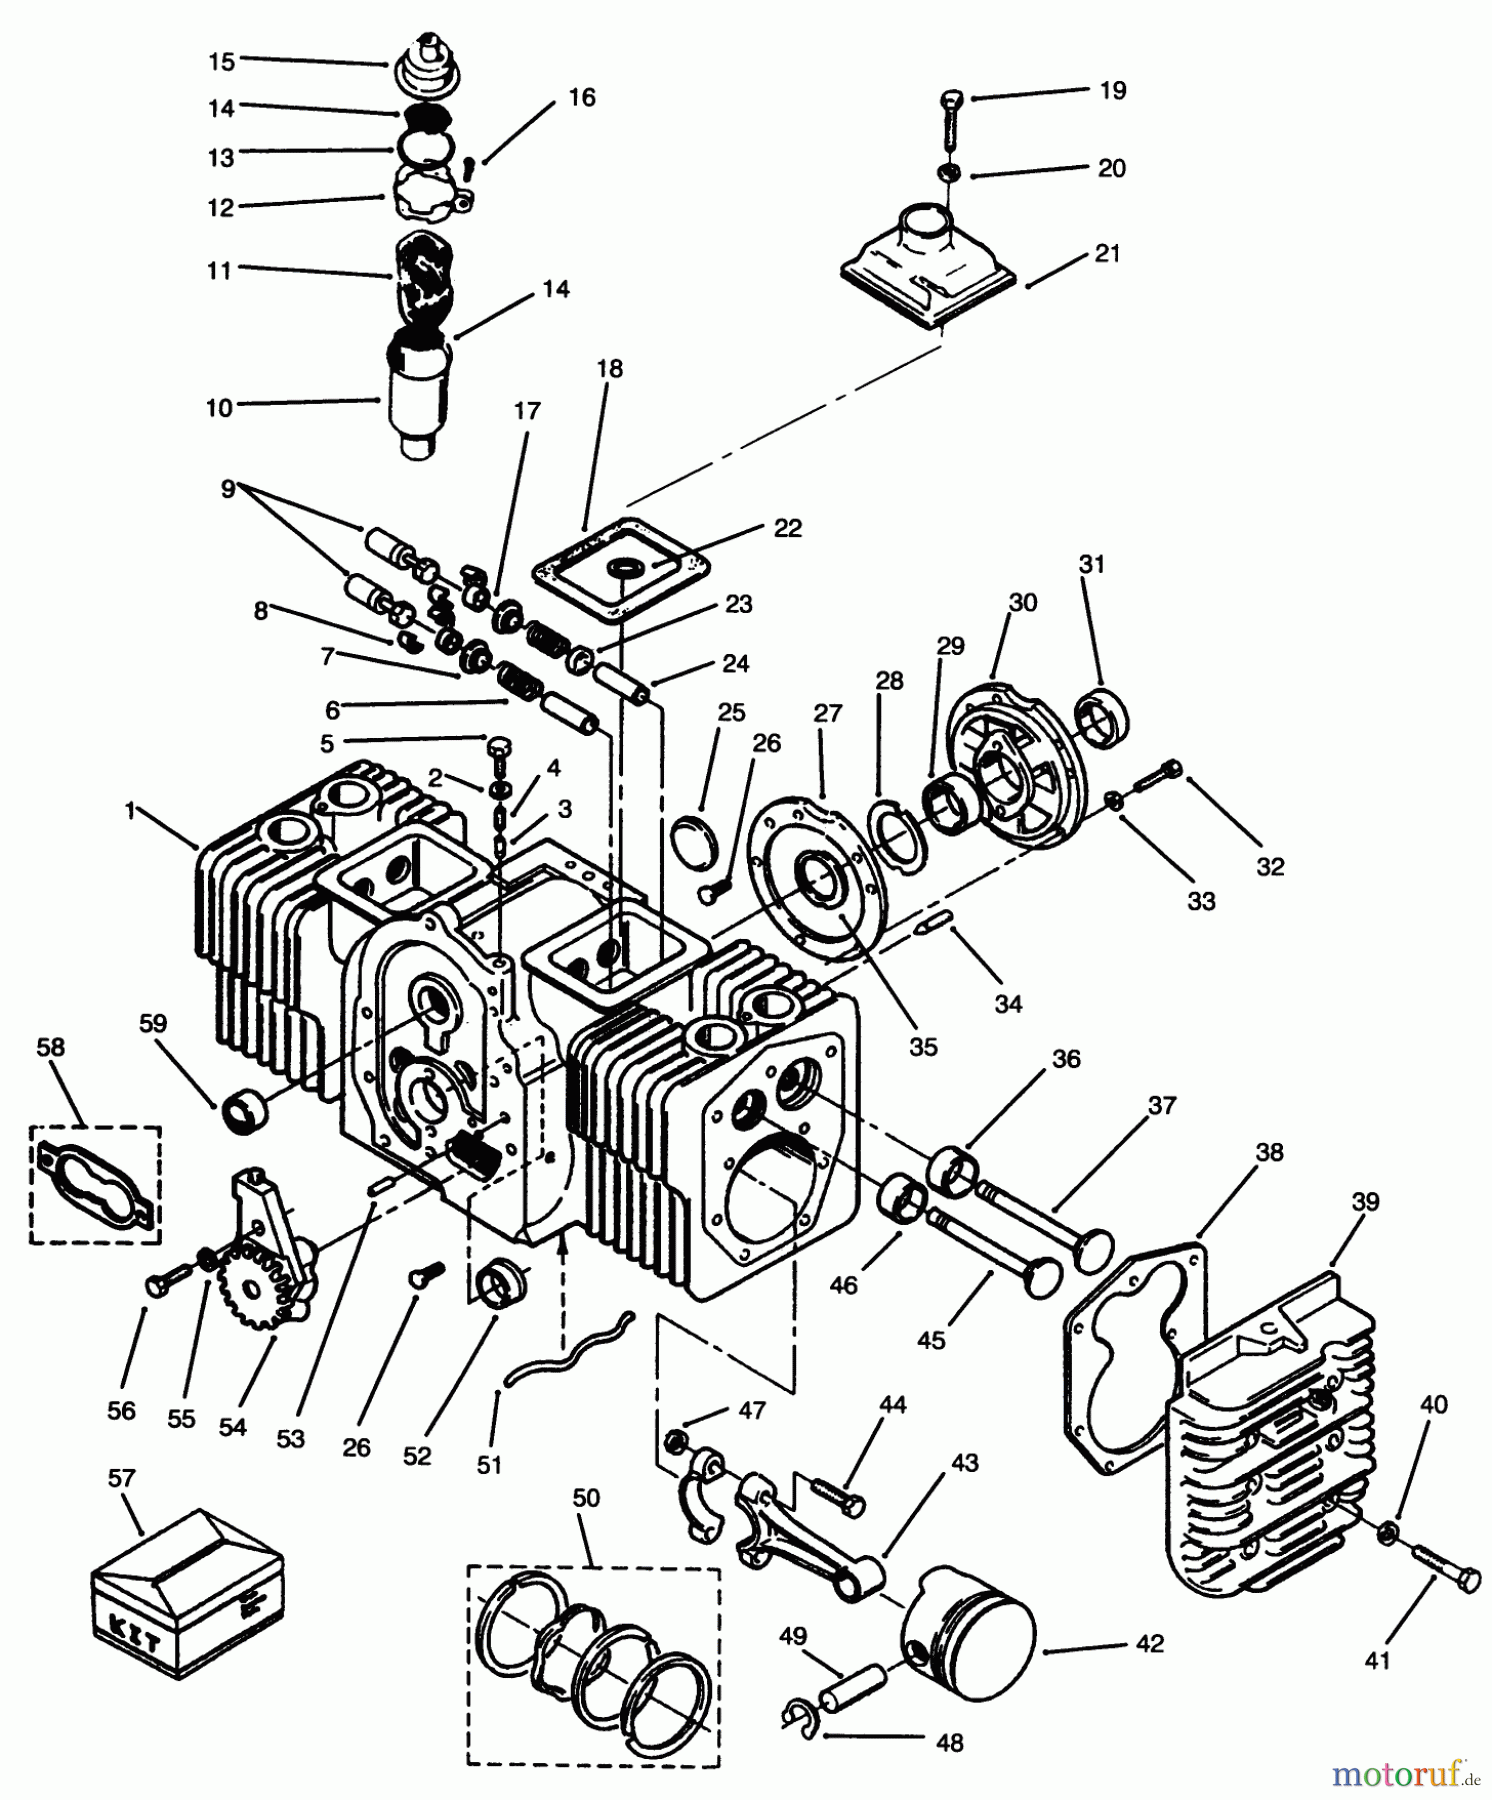  Toro Neu Mowers, Lawn & Garden Tractor Seite 1 73501 (520-H) - Toro 520-H Garden Tractor, 1995 (59002869-59002946) ENGINE CYLINDER BLOCK